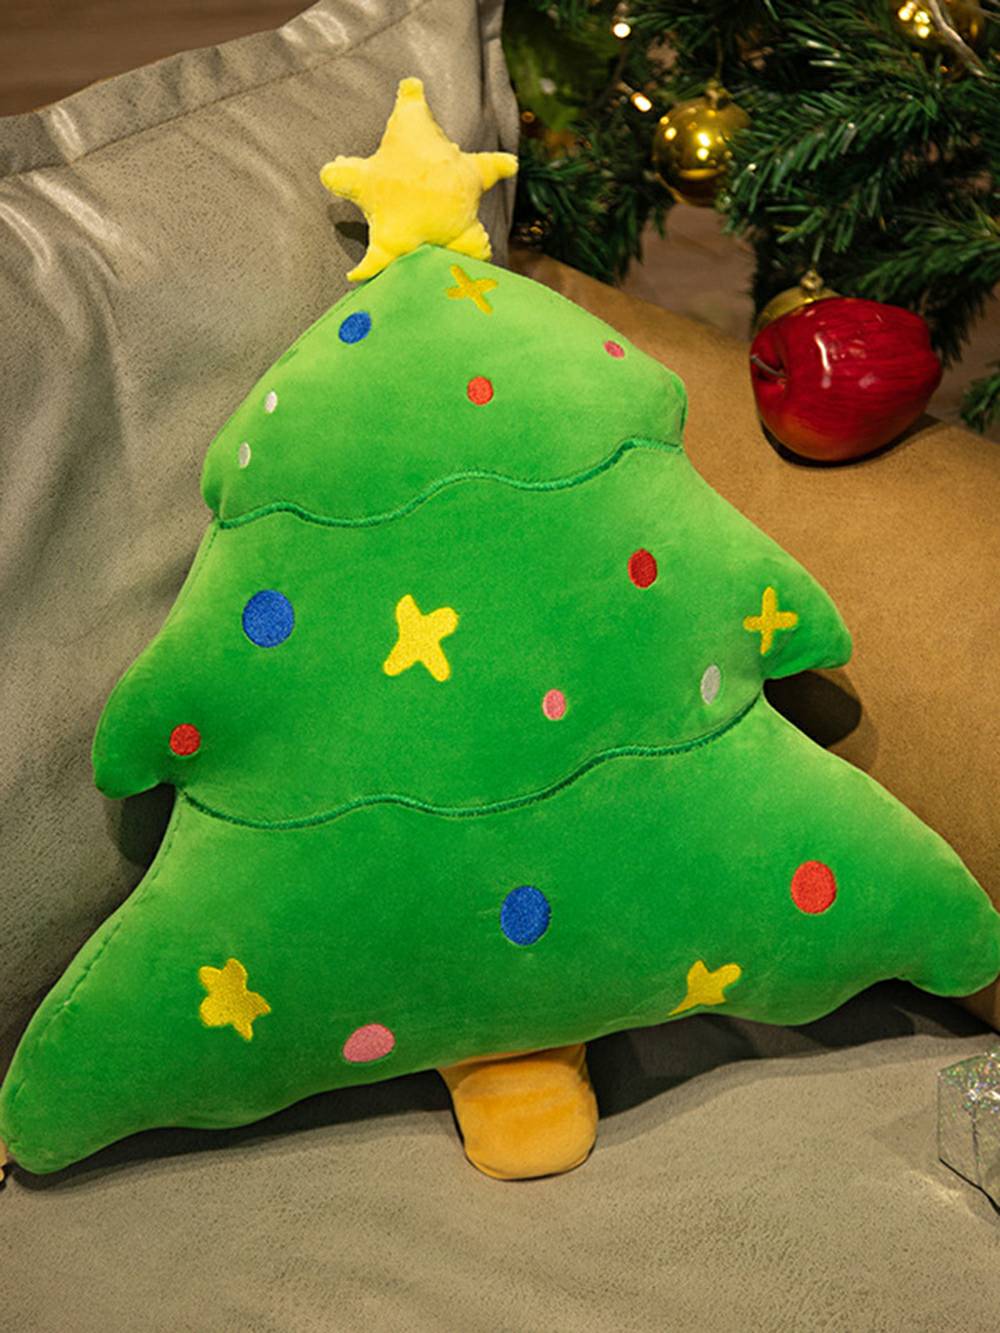 Colección de peluches navideños Kawaii de árbol de Navidad